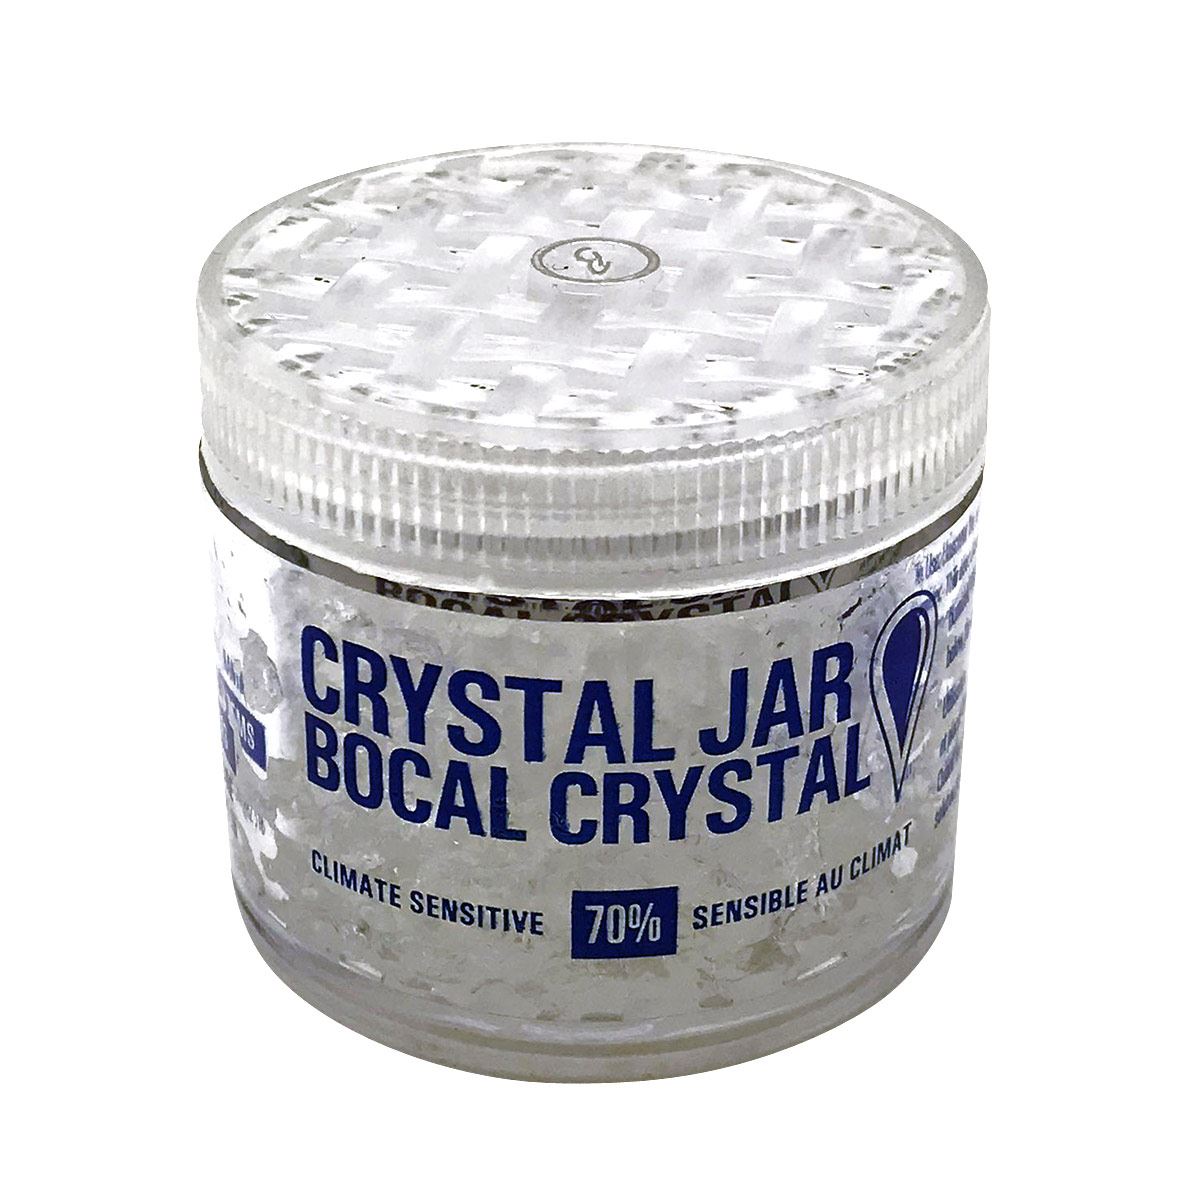 Crystal Jar Brigham